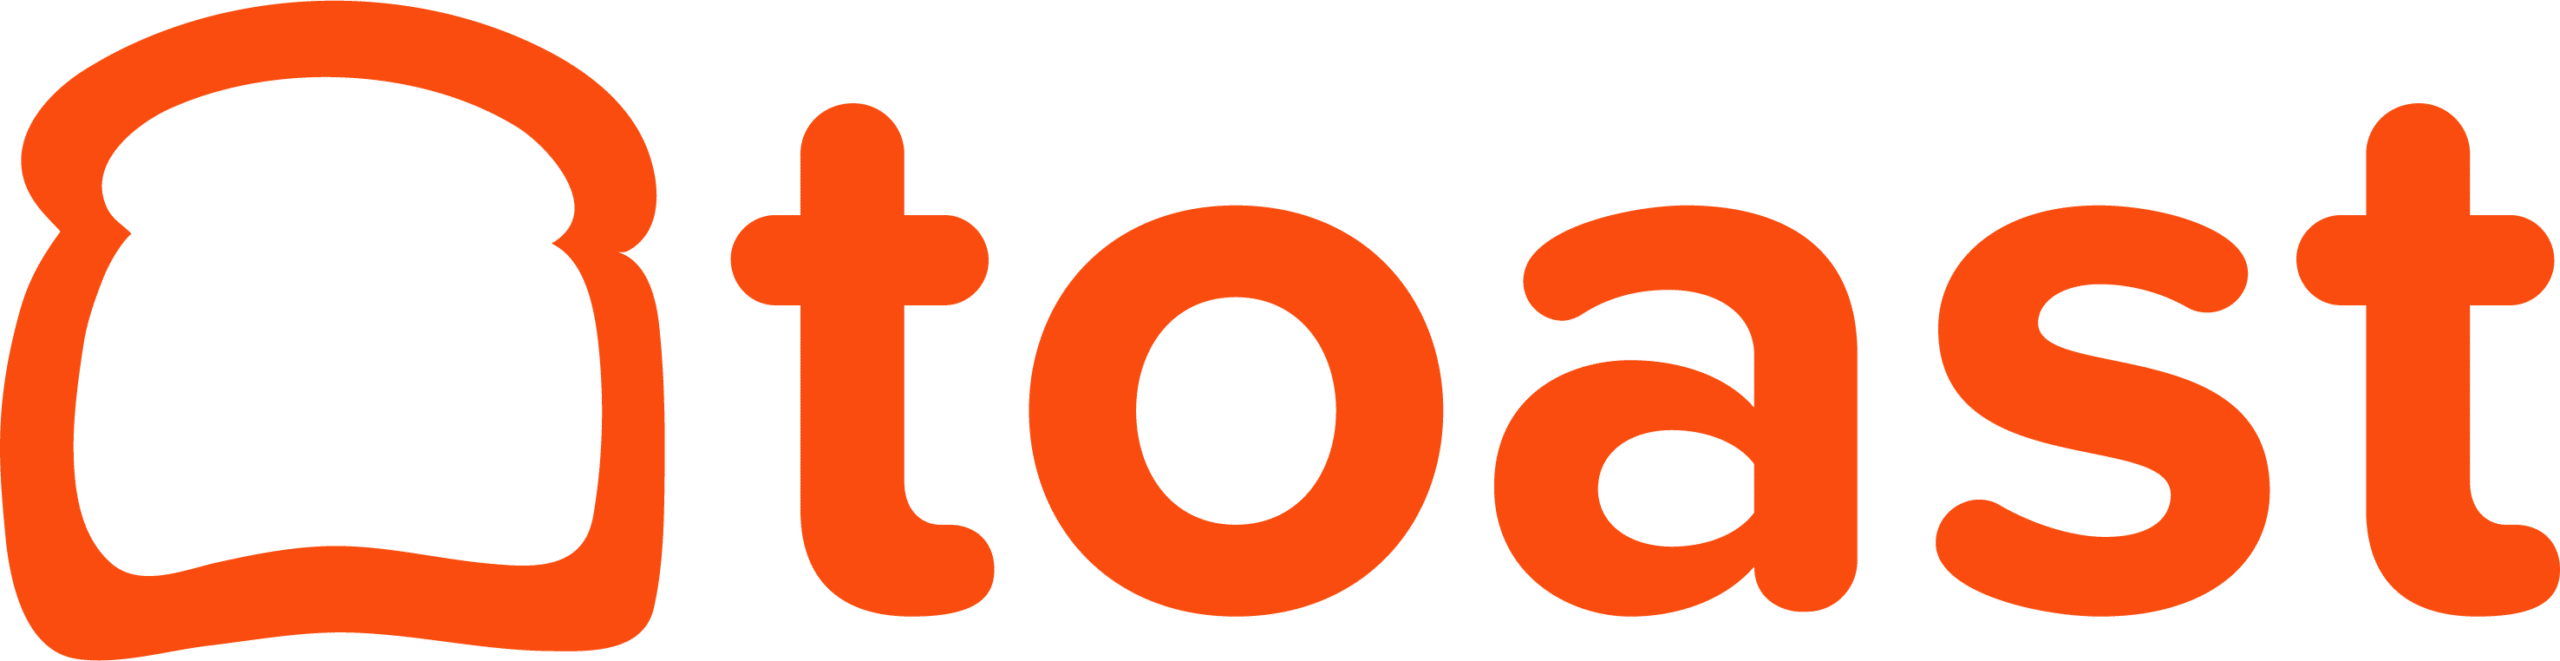 Toast orange logo.